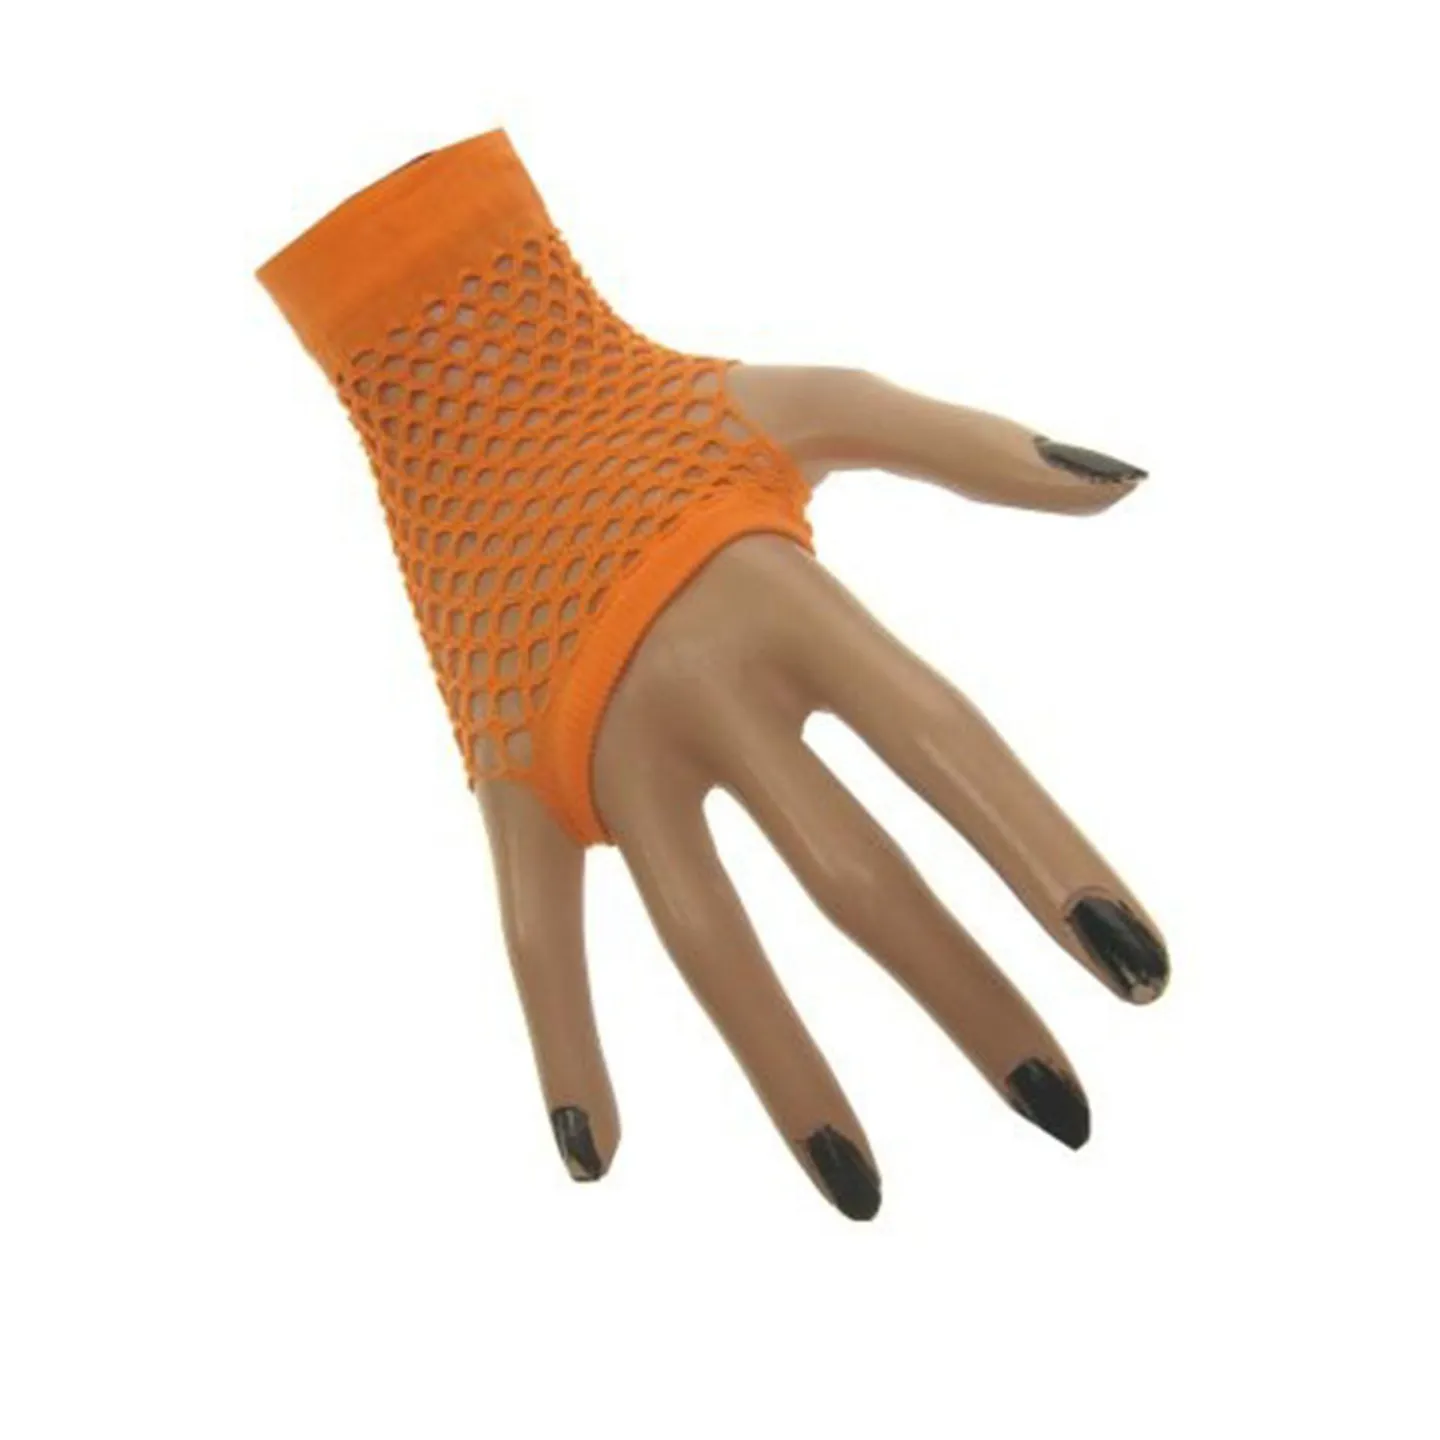 Visnet handschoenen fluor oranje kopen.